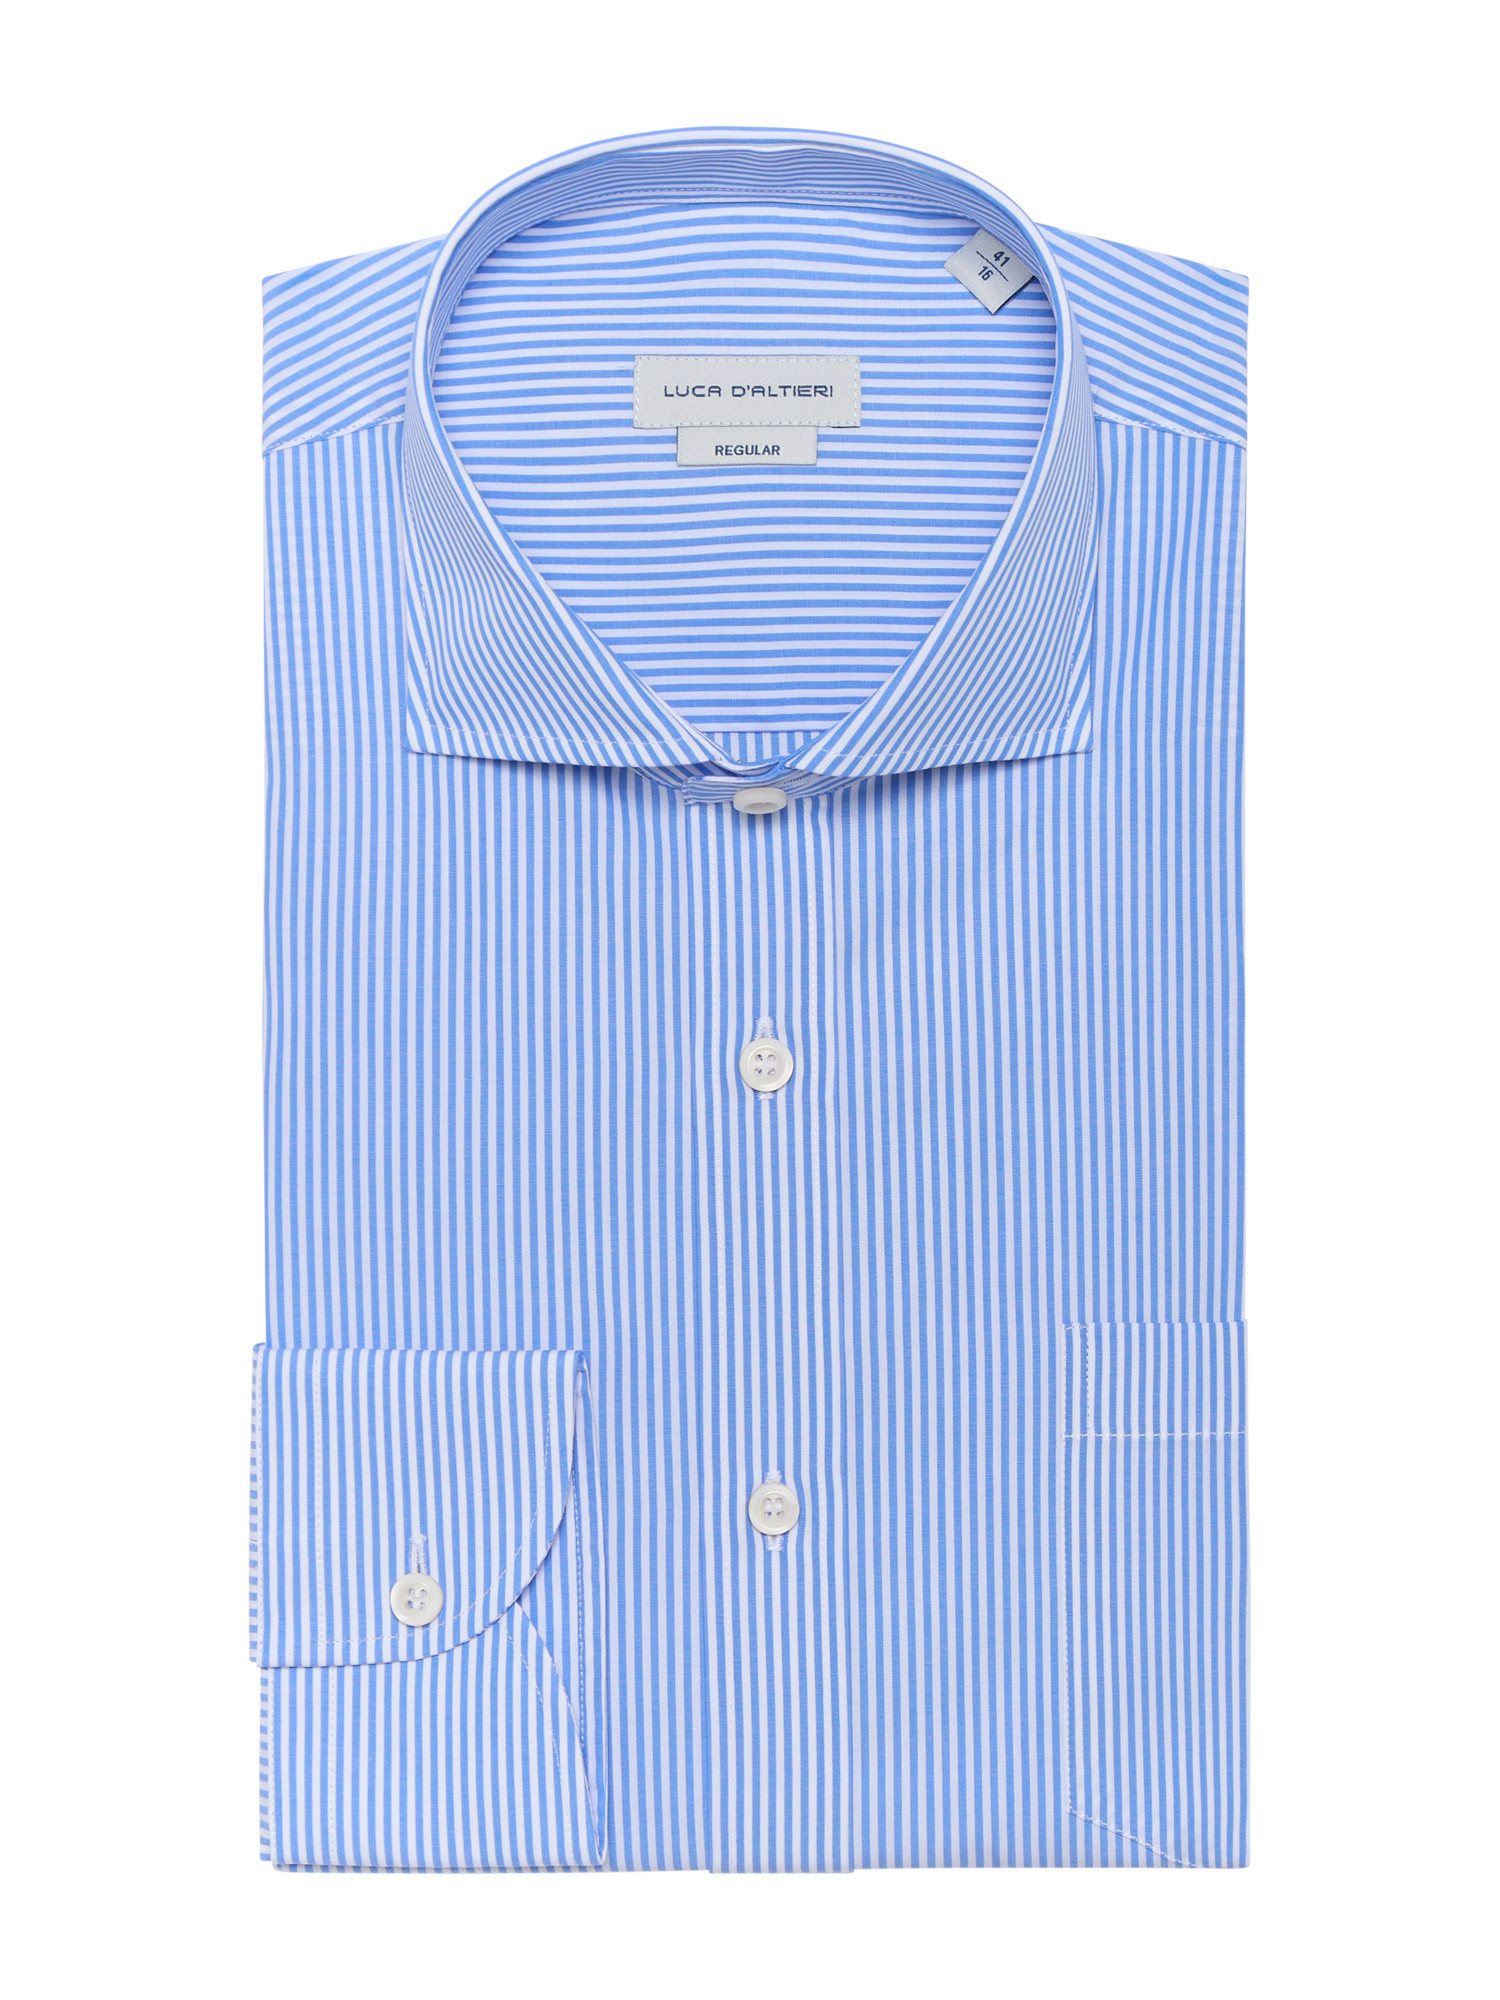 Luca D'Altieri повседневная рубашка стандартного кроя из поплина из чистого хлопка, голубой